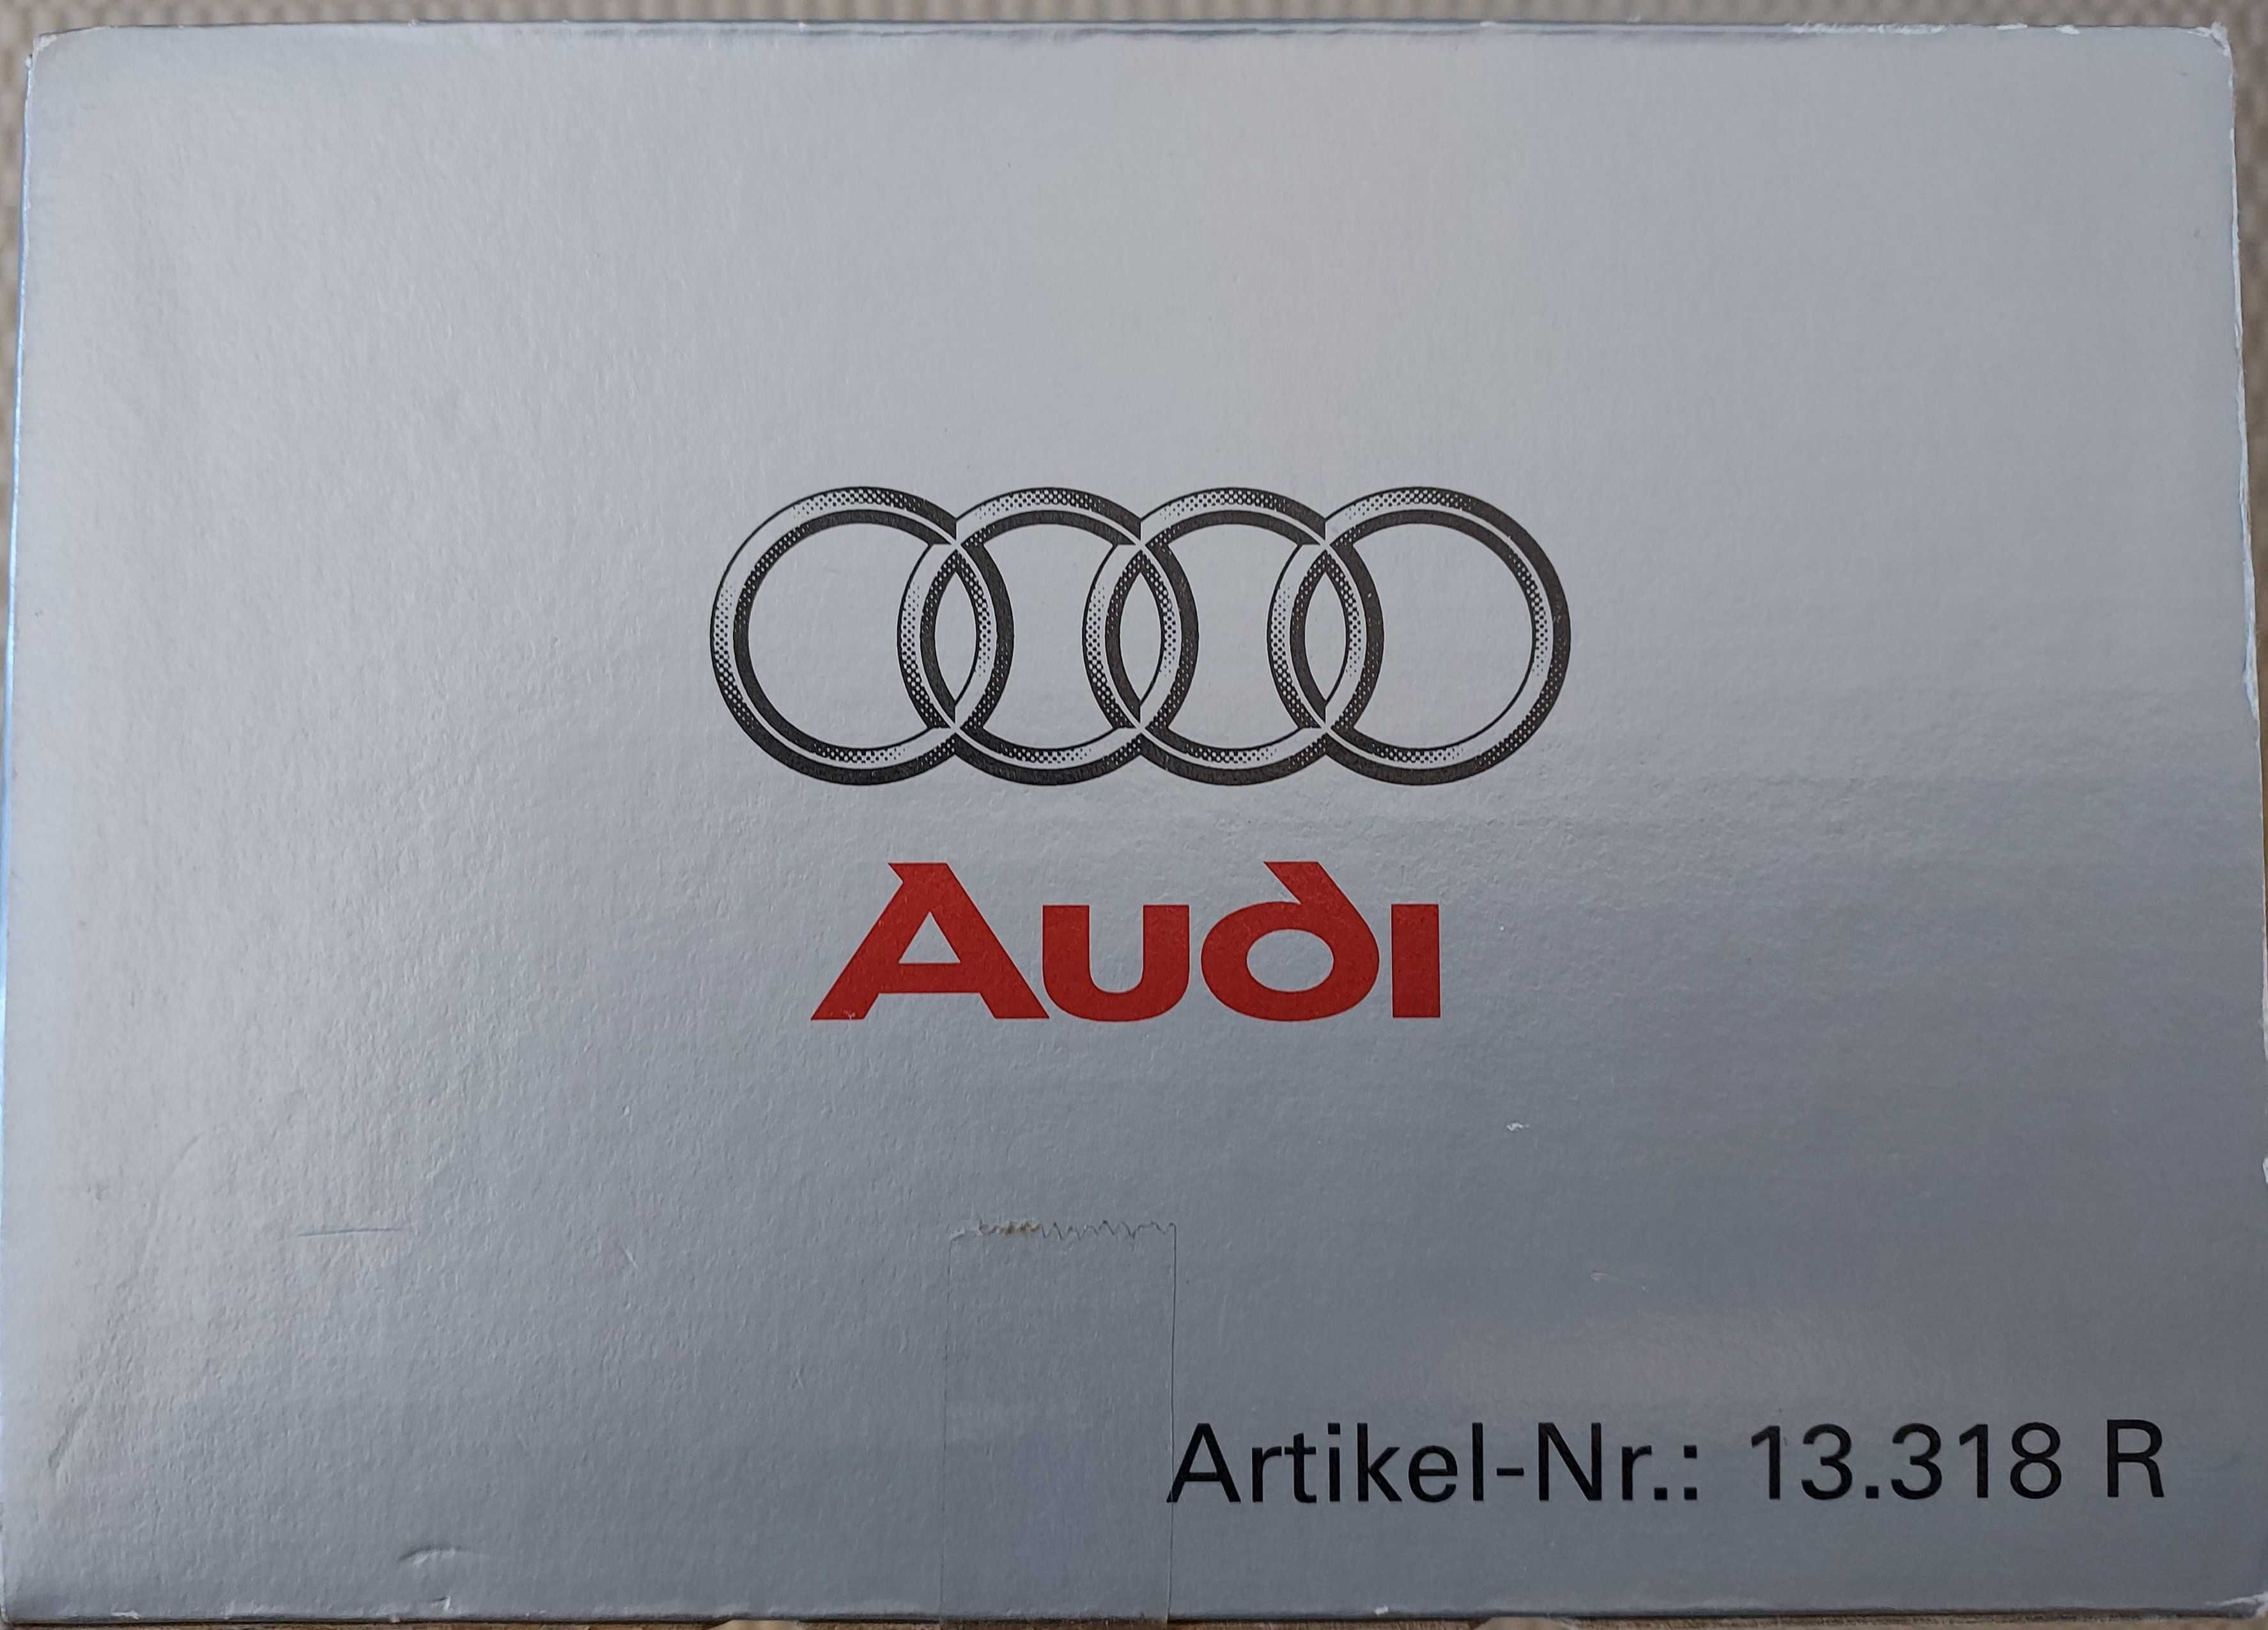 Audi TT, modelo Revell